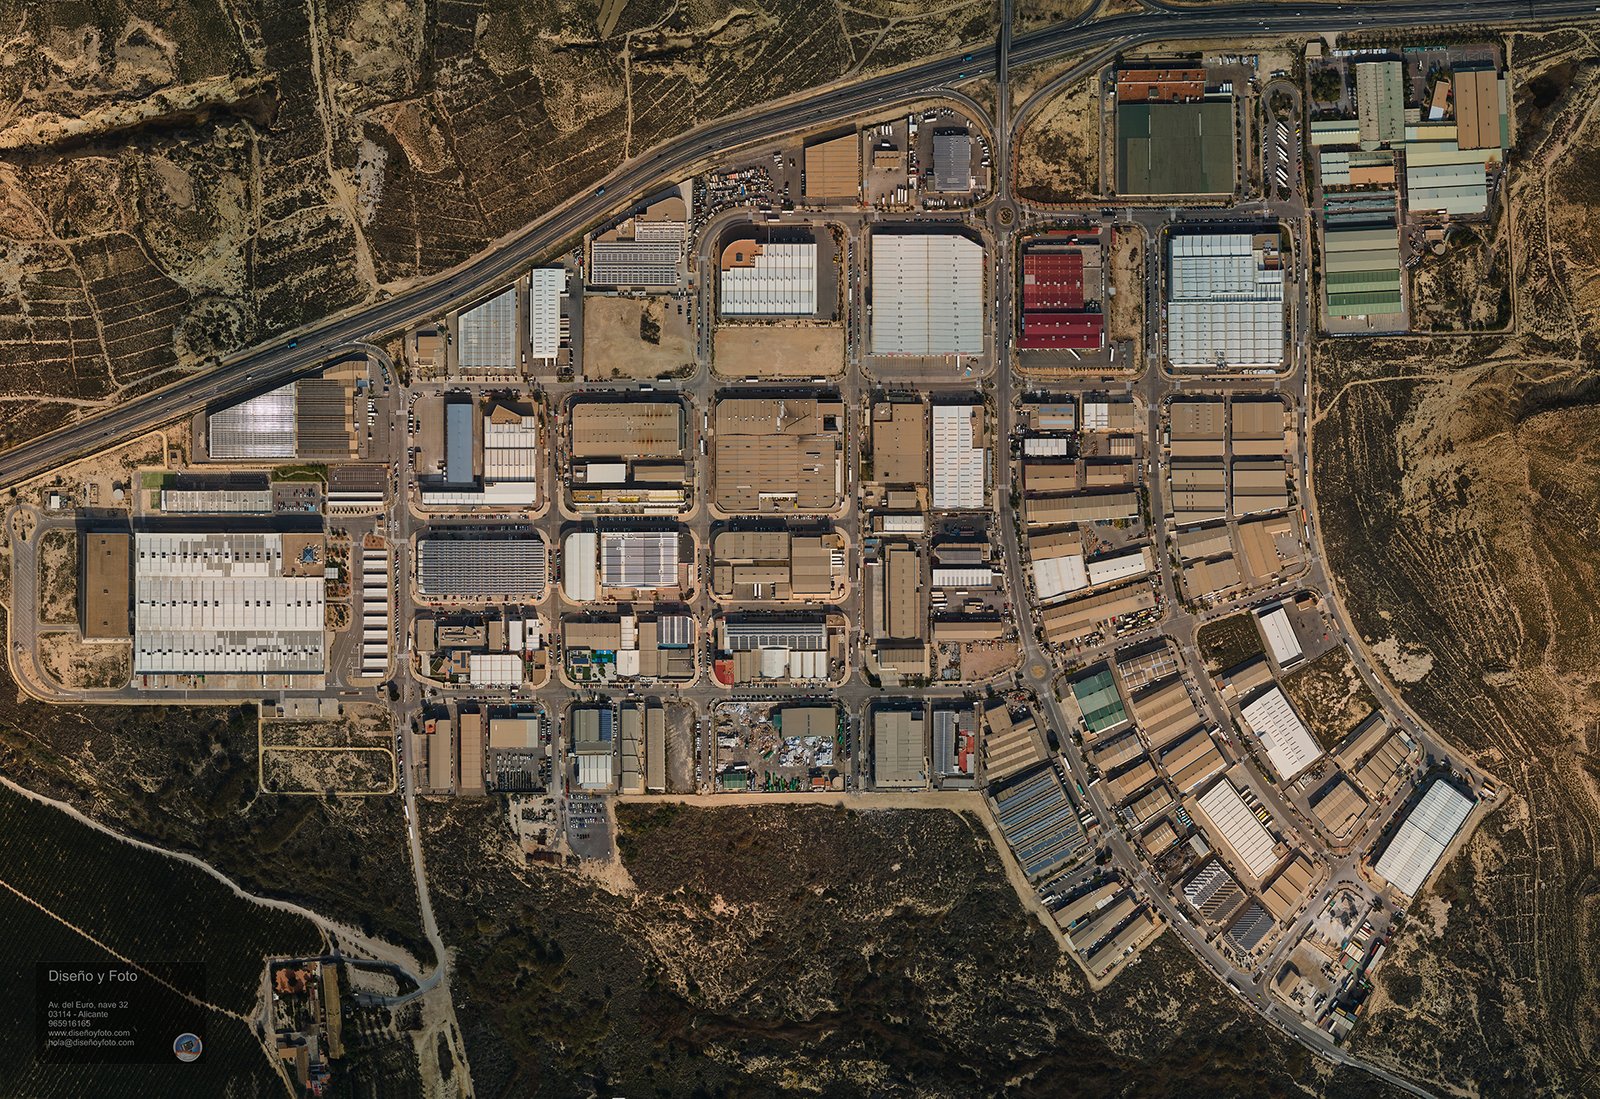 Fotografia aerea con dron alicante poligono industrial atalayas diseño y foto